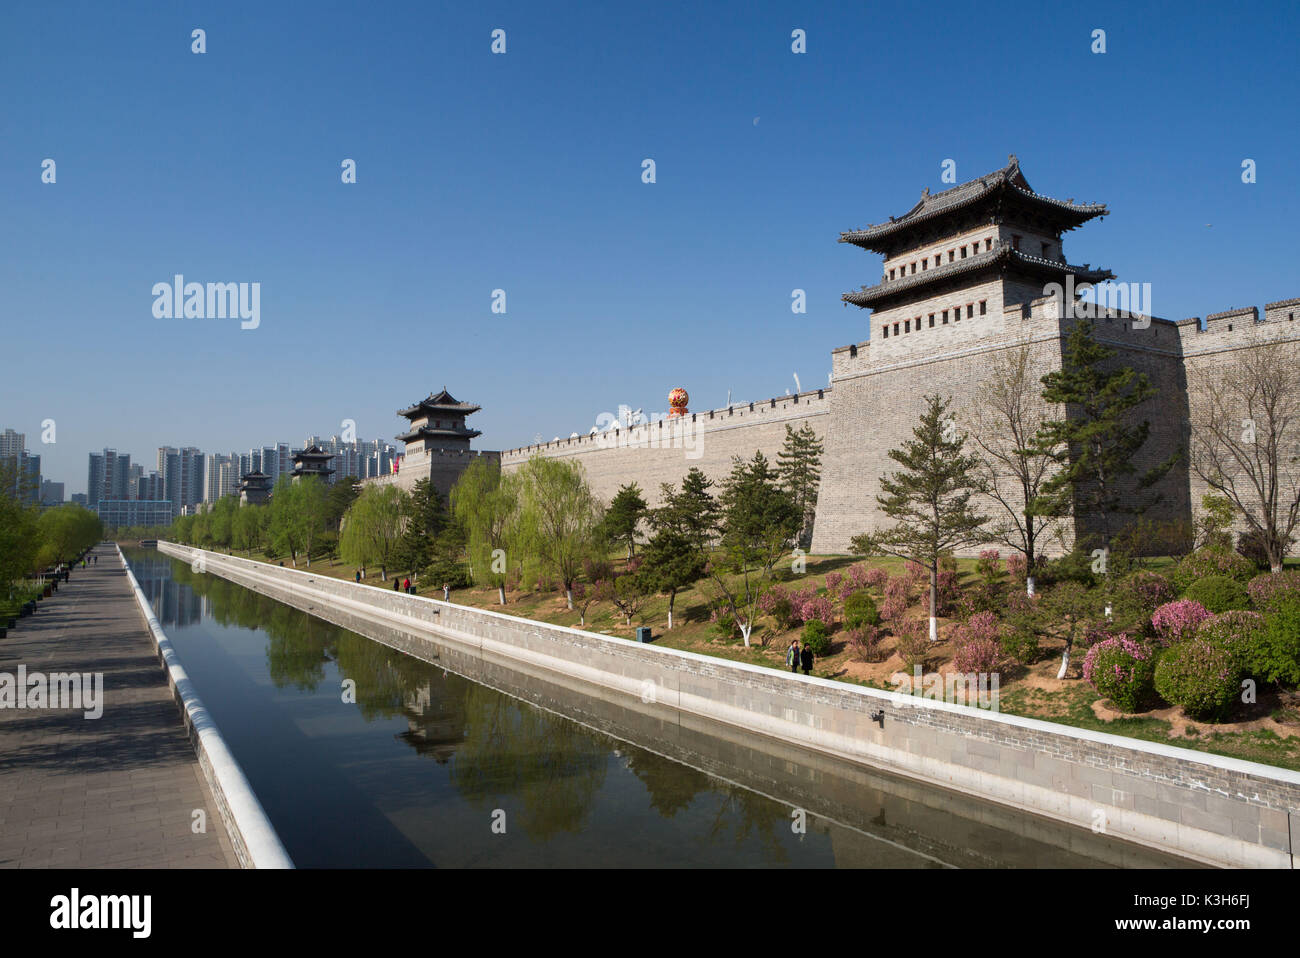 La Cina, nella provincia di Shanxi, Datong, mura antiche della città Foto Stock